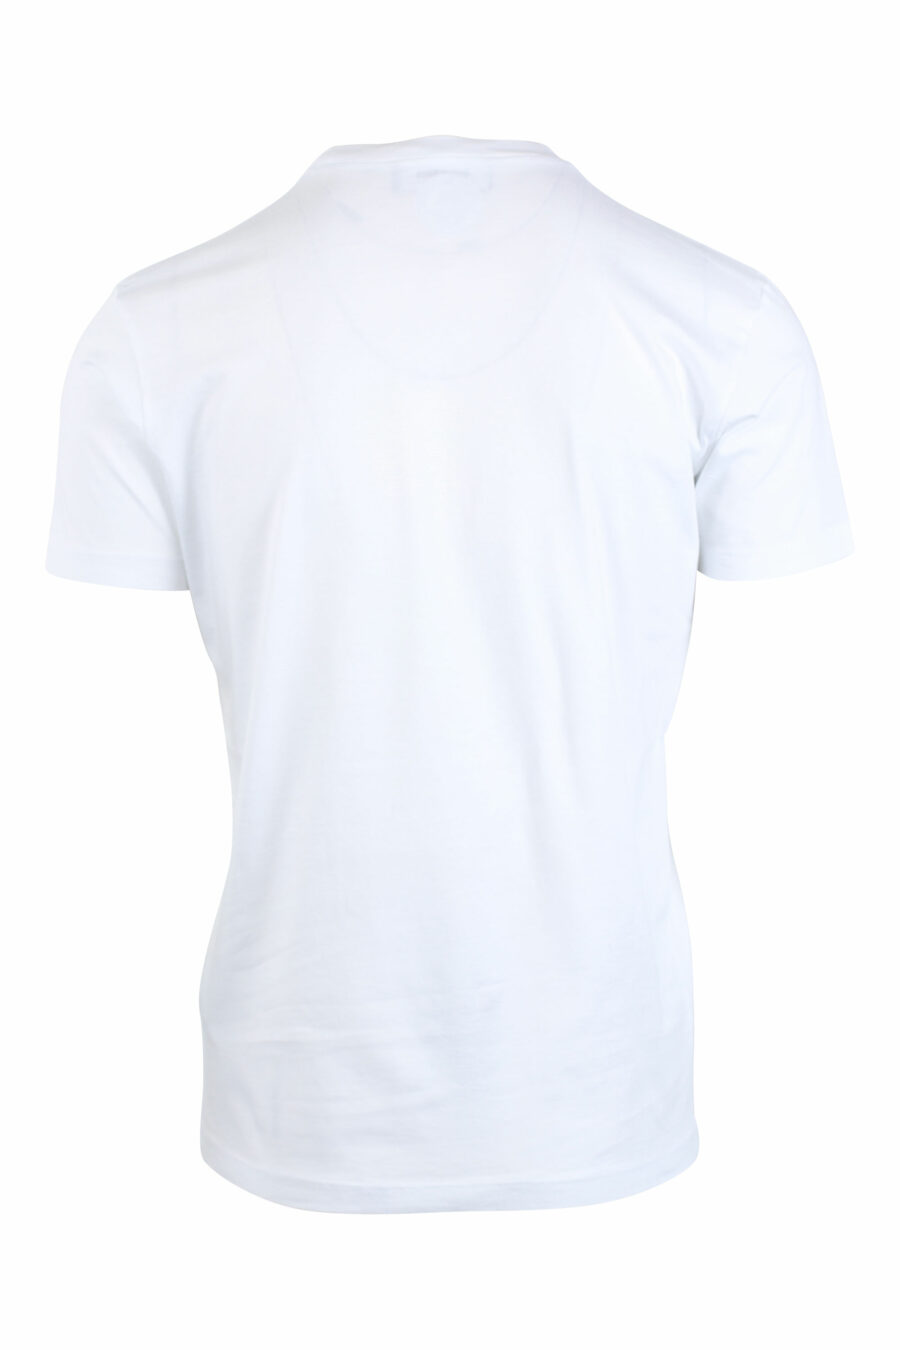 T-shirt branca com o logótipo da folha verde feliz - IMG 2630